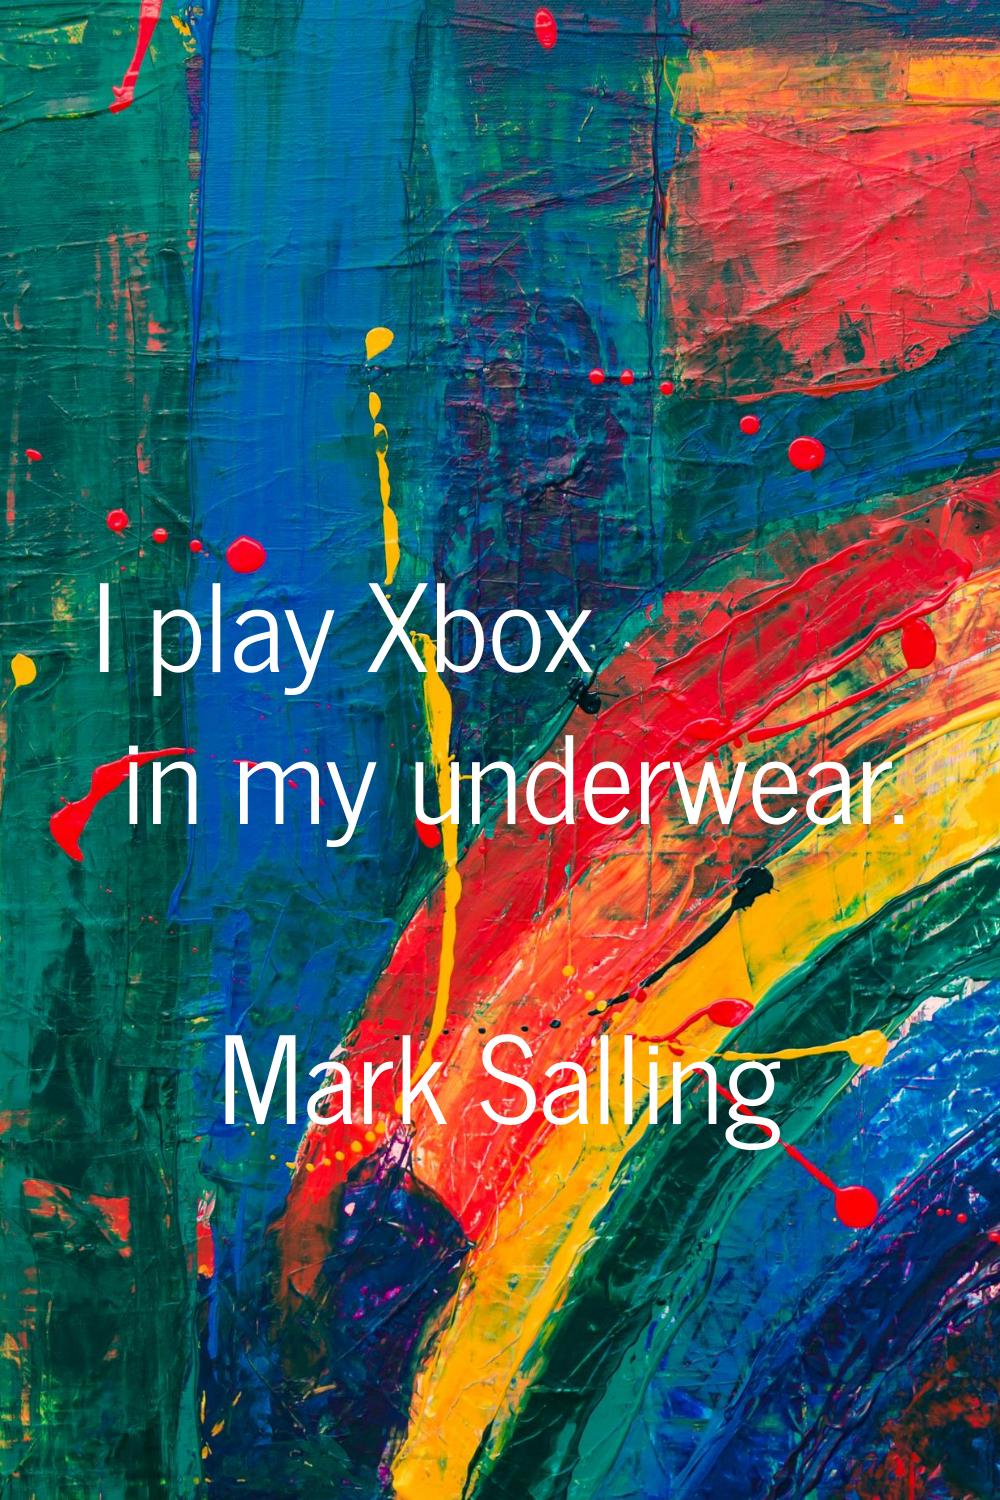 I play Xbox in my underwear.